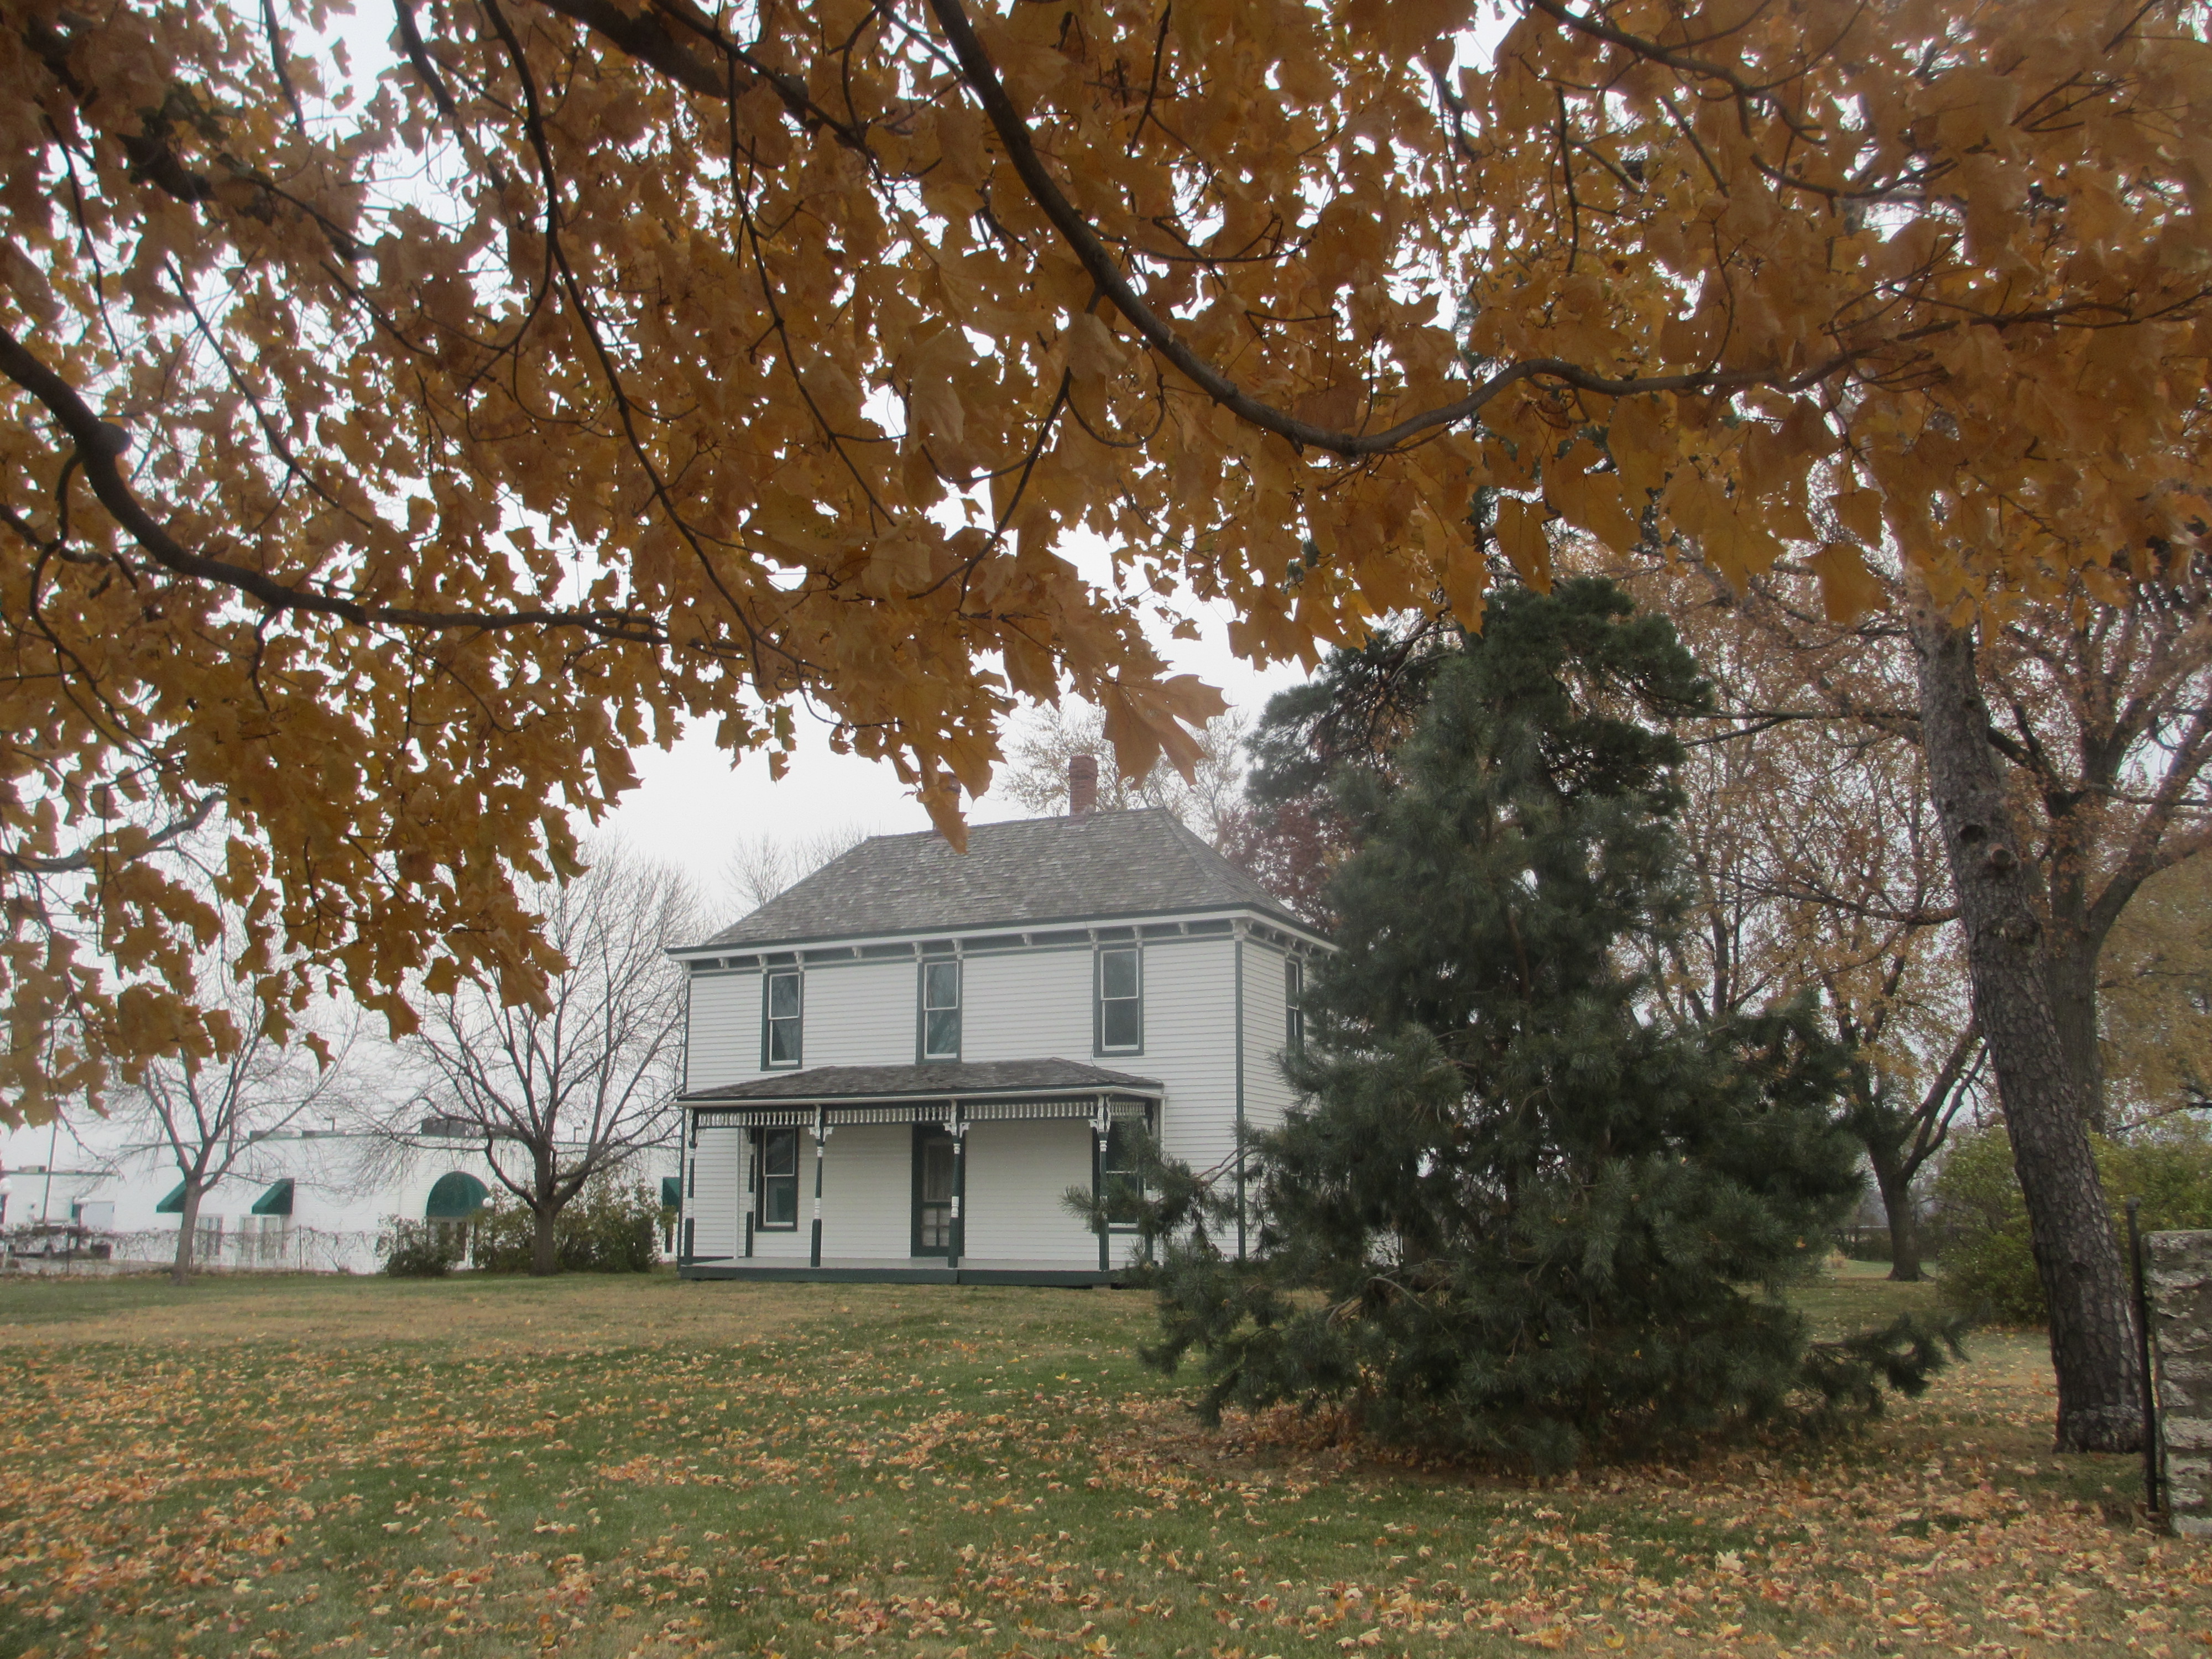 The Truman Farm Home sits behind Autumn trees.